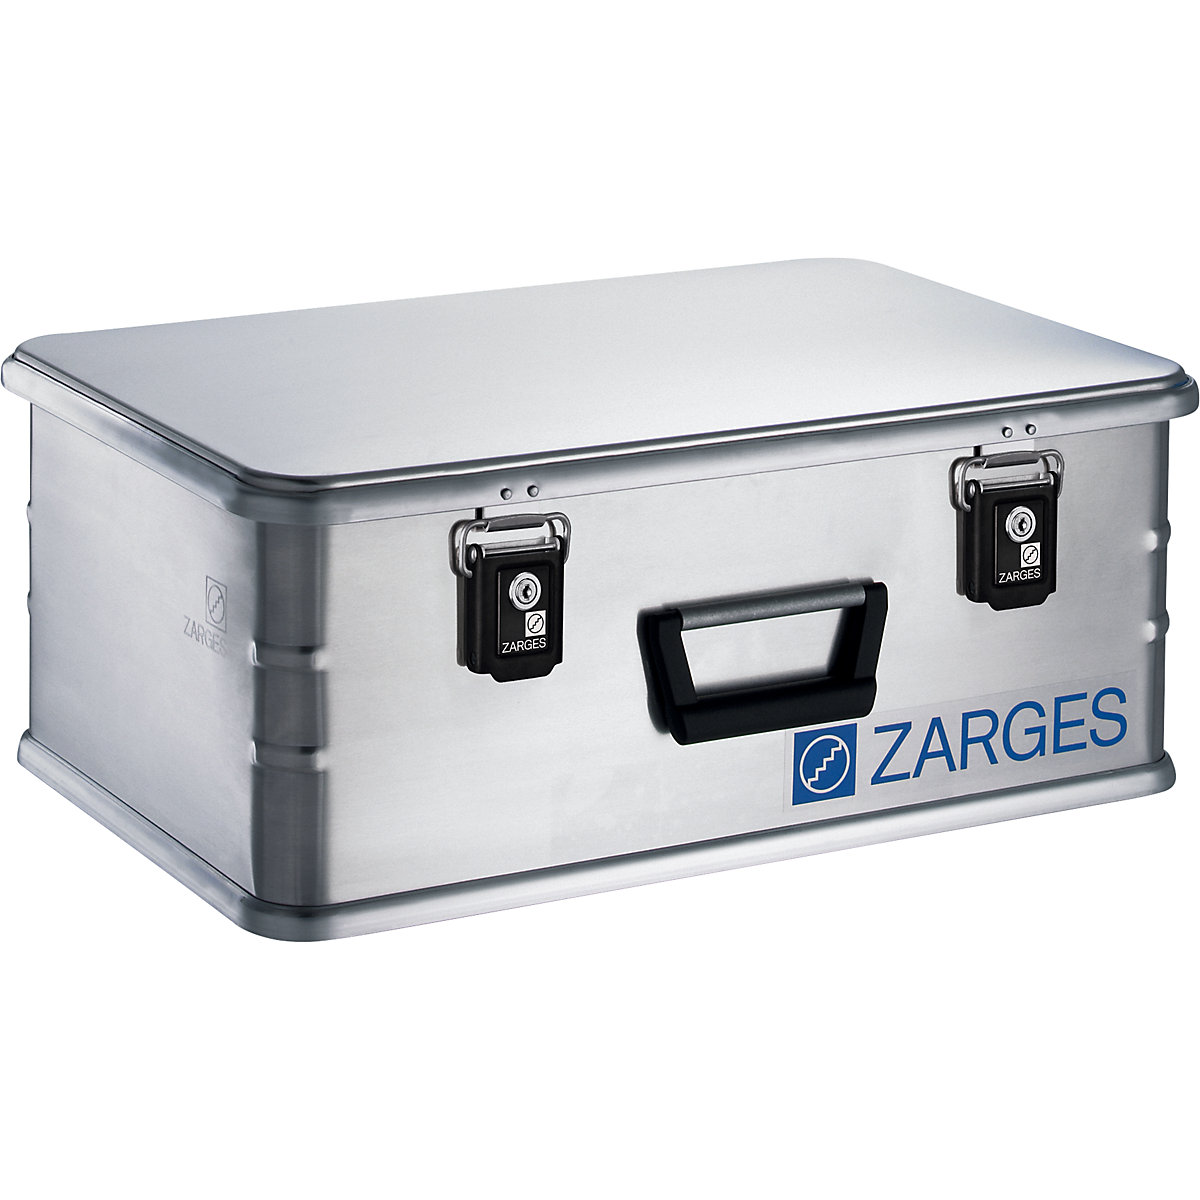 Aluminiowy pojemnik combi – ZARGES